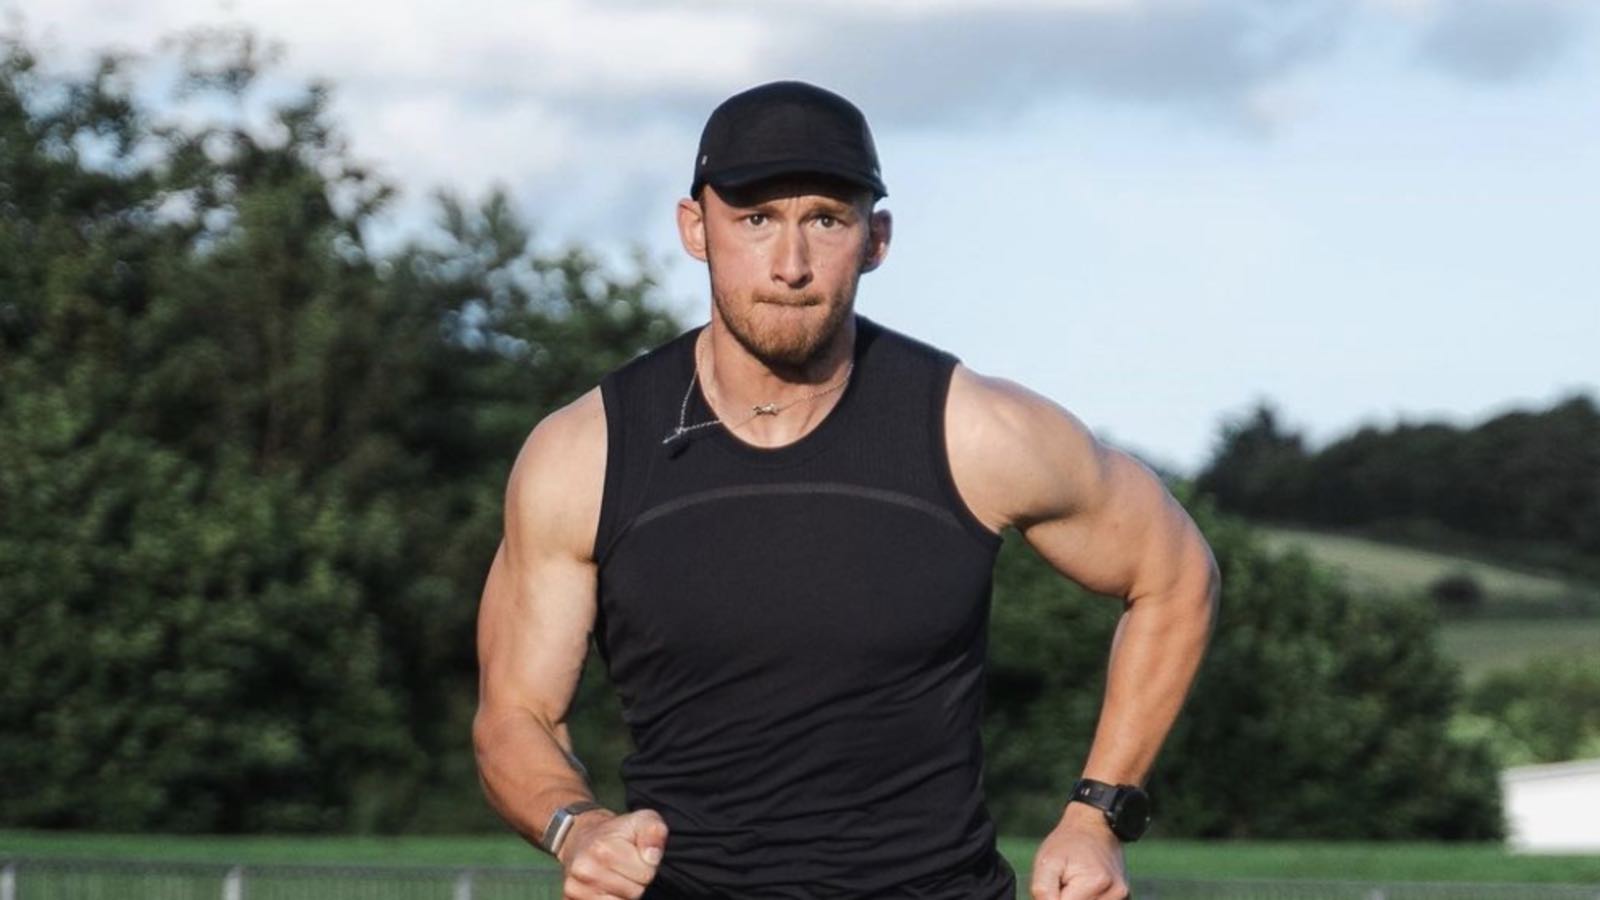 Fergus Crawley Shares 5 Tips For Running a Better 5K